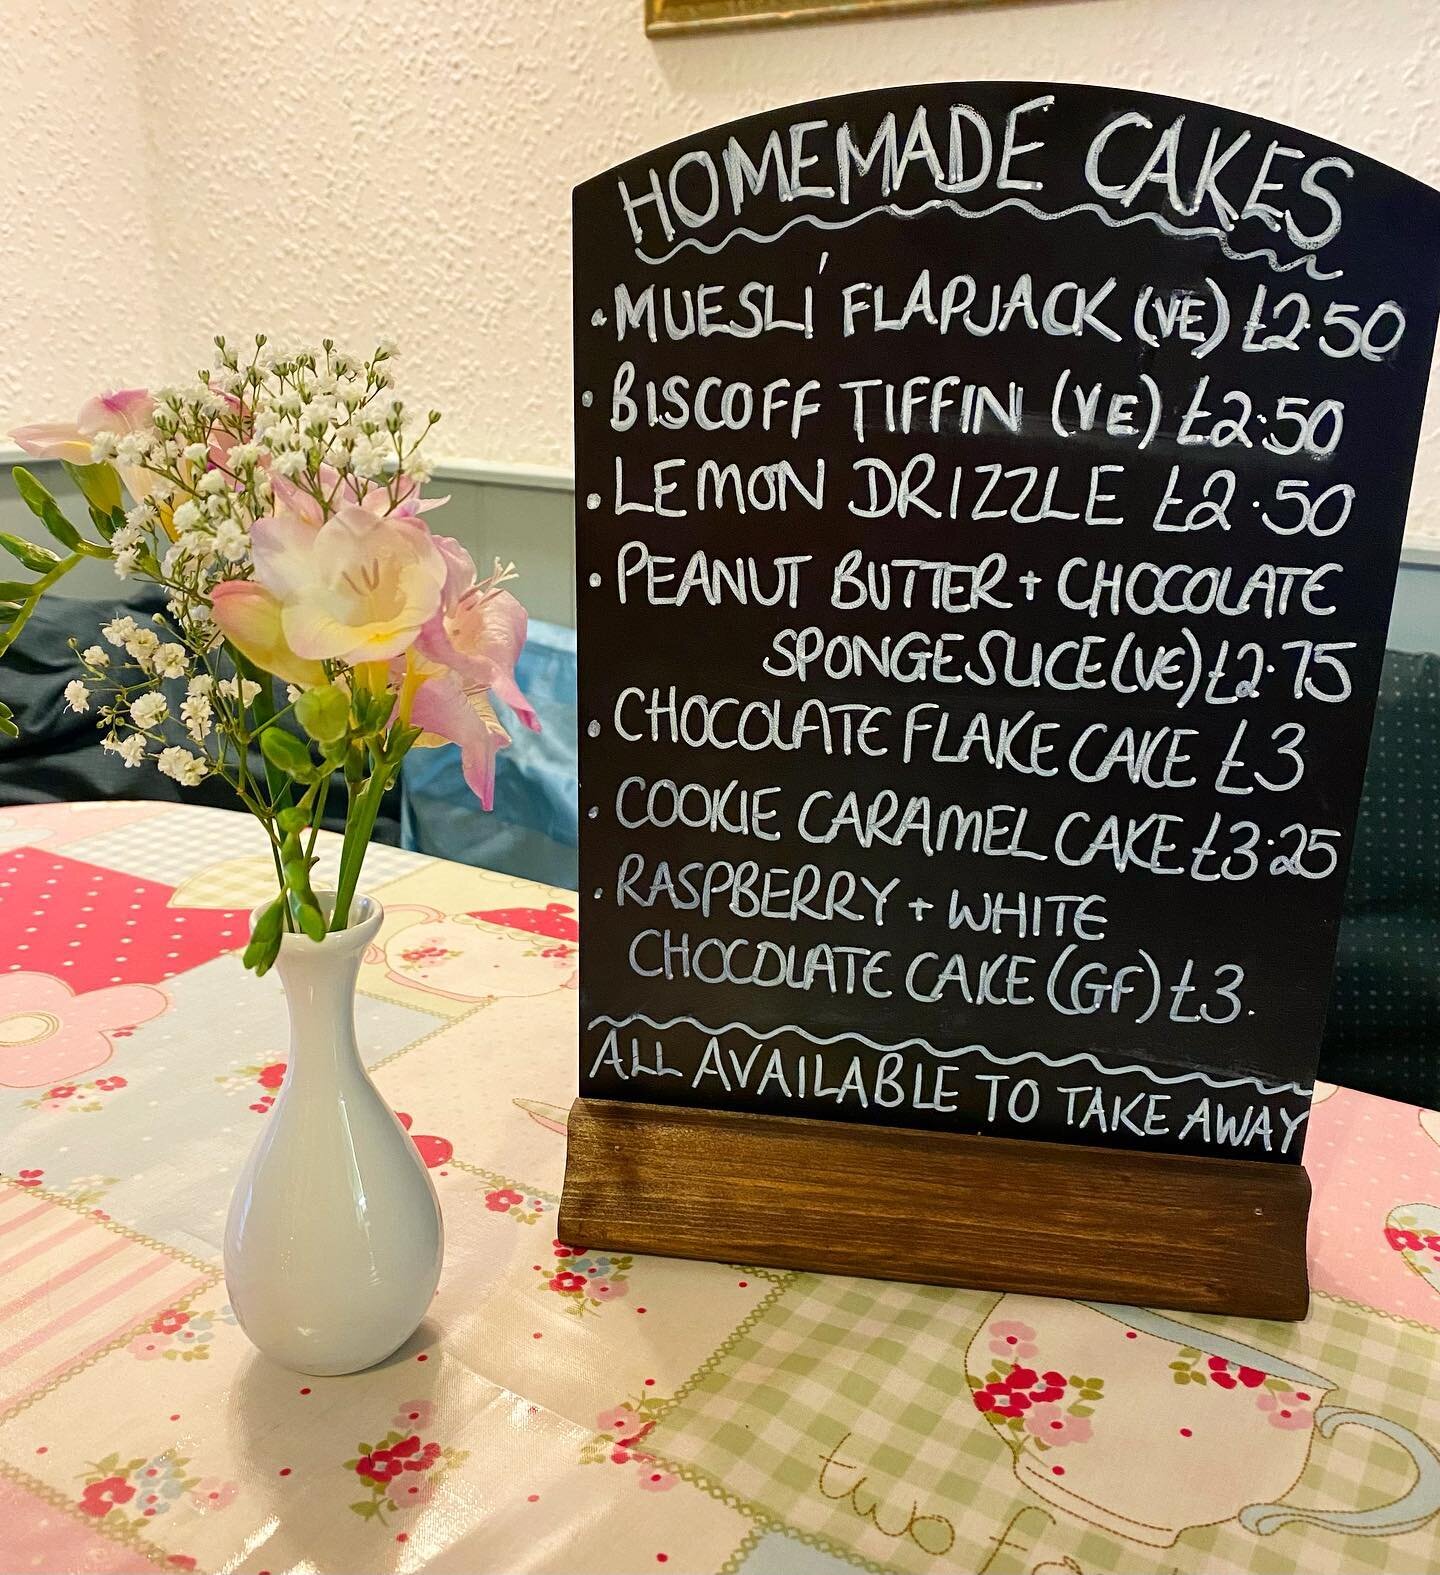 Today&rsquo;s selection of homemade cakes and treats 🧁
.
.
.
#romsey #cafe #romseycafe #homemadecake #homemadebaking #cakecakecake #vegancake #glutenfreecake #teacups #hampshirecafe #hampshire #testvalley